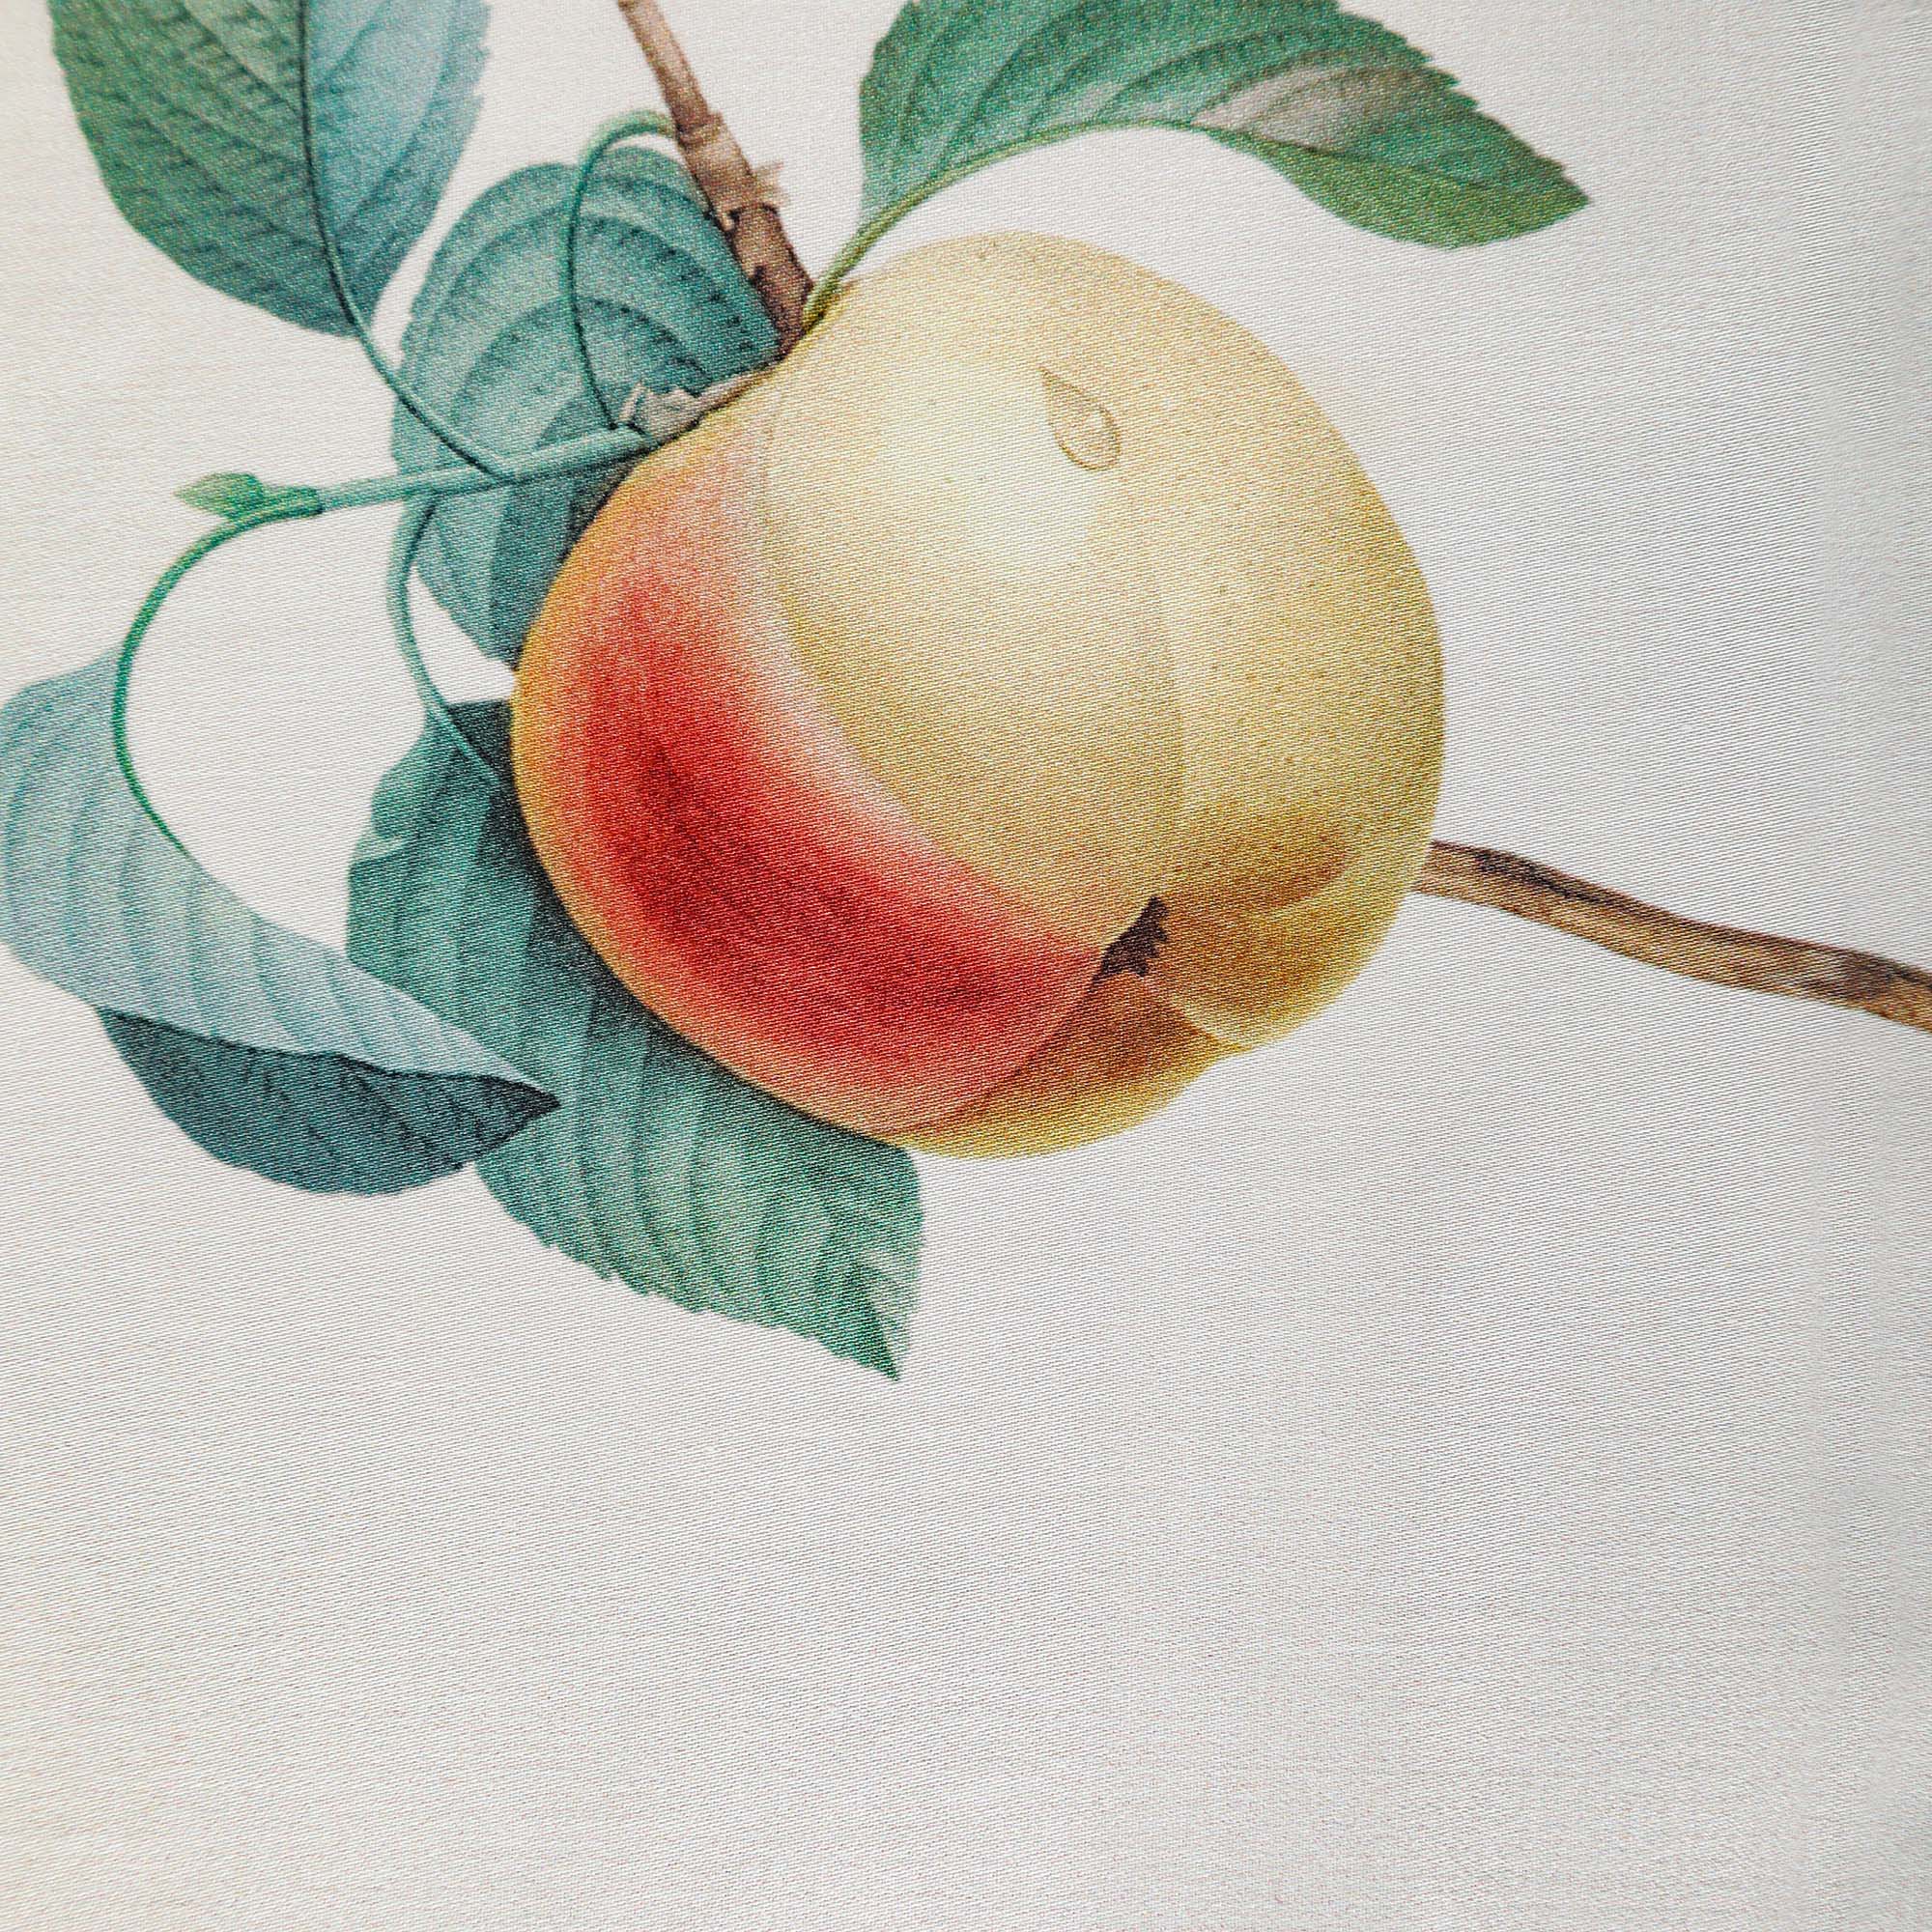 Постельный комплект Wonne Traum elegance apple gard pistach Полуторный, размер Полуторный - фото 4